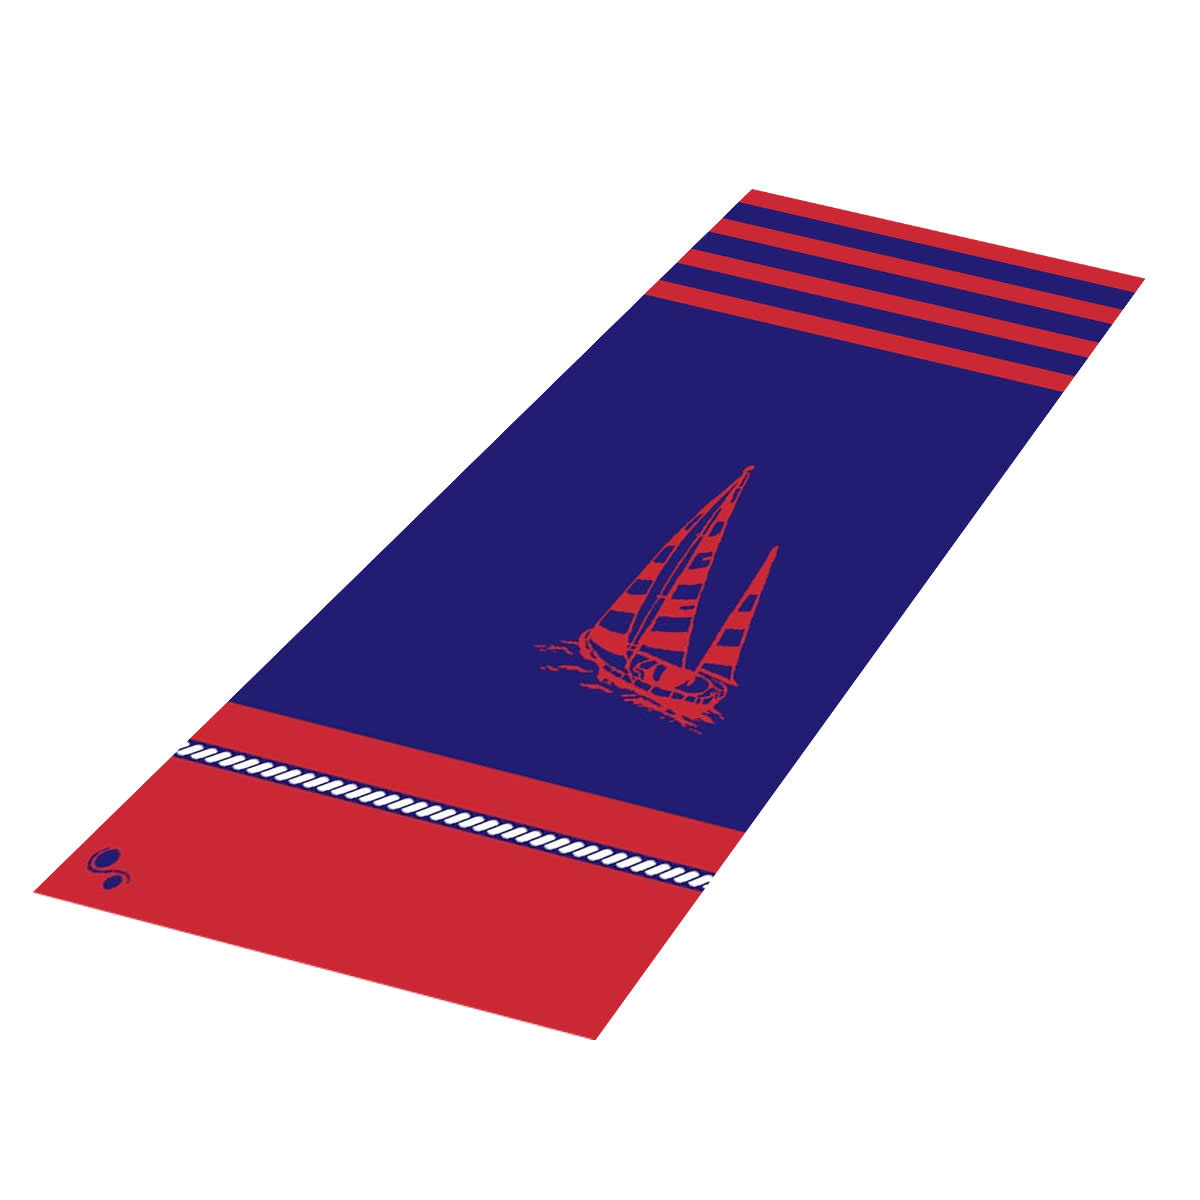 Textiles Admiral's Cup - Sheared Jacquard Beach Towel